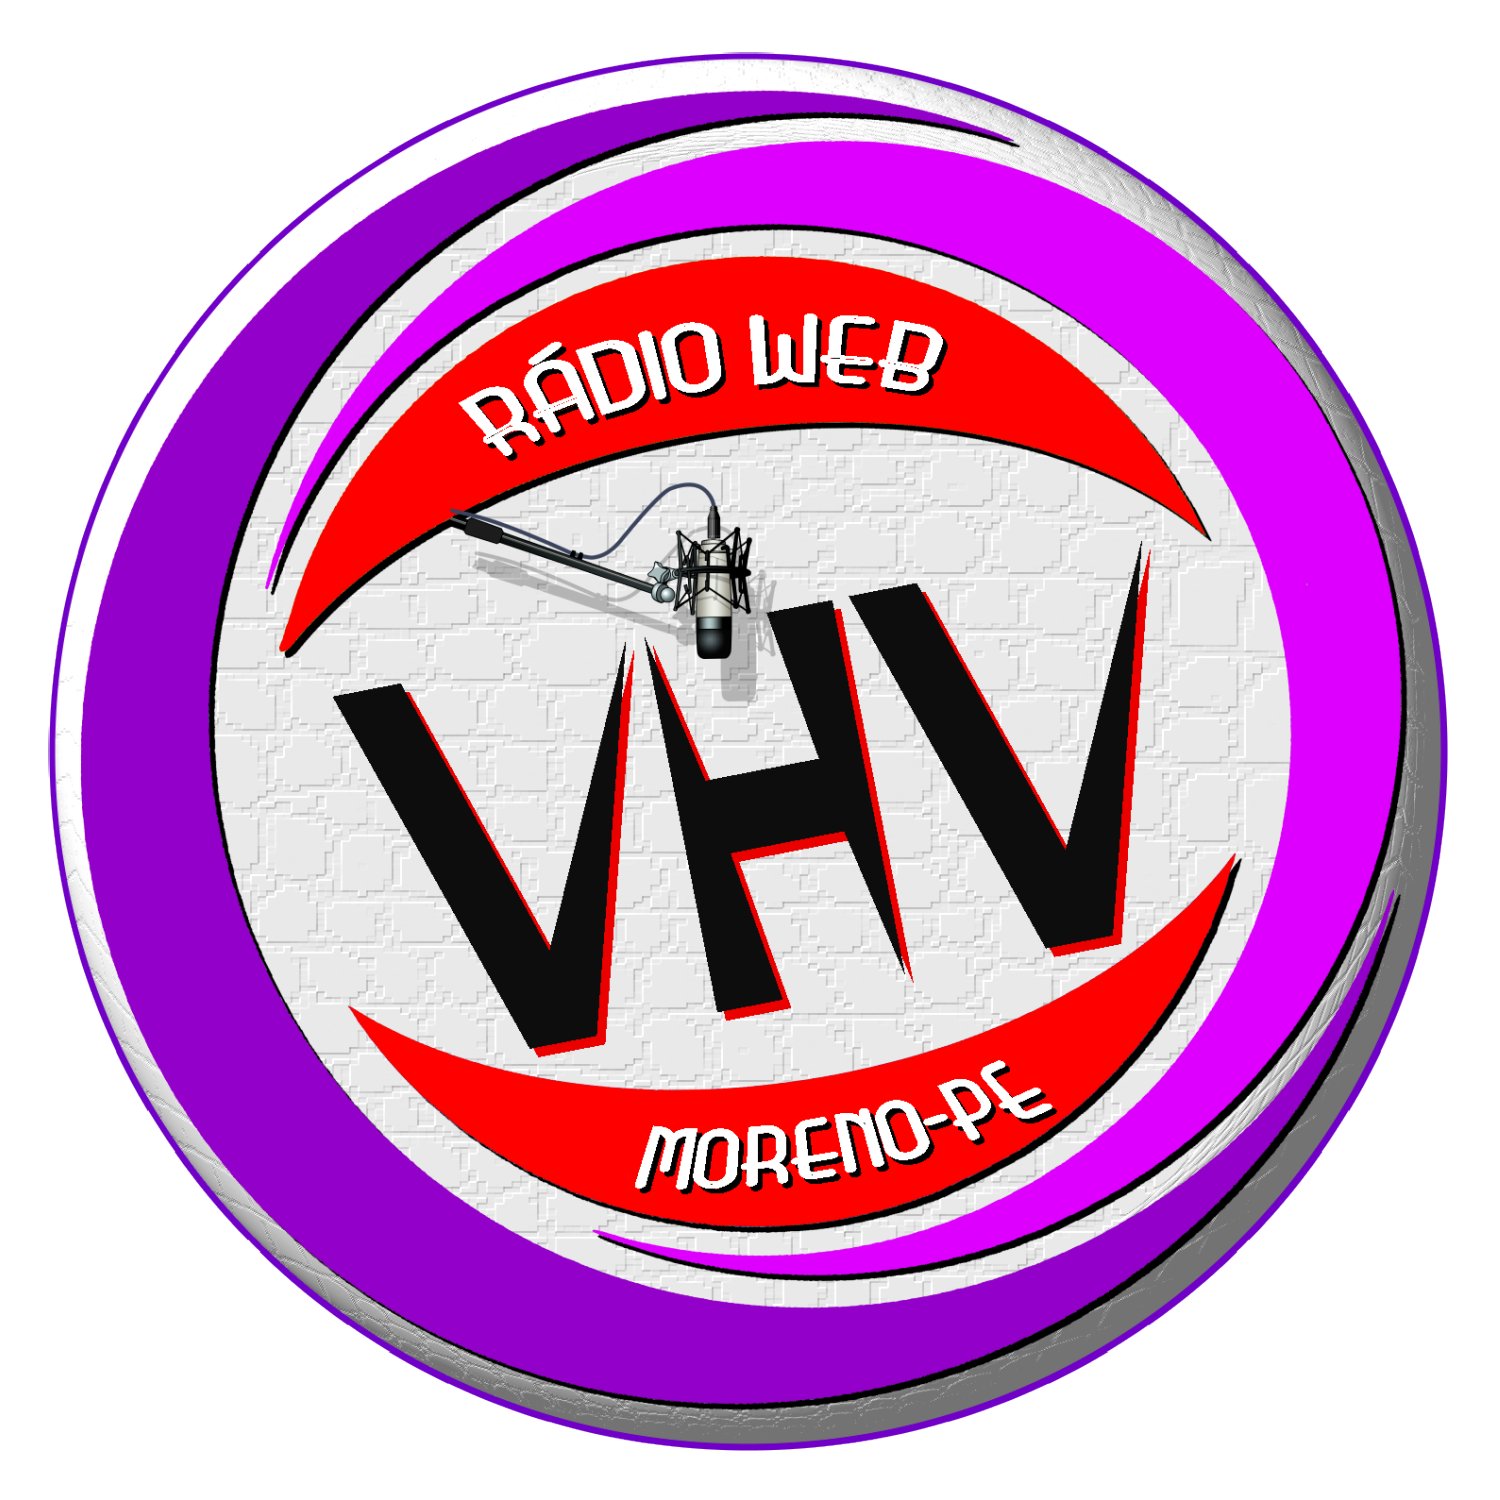 Rdio Web VHV